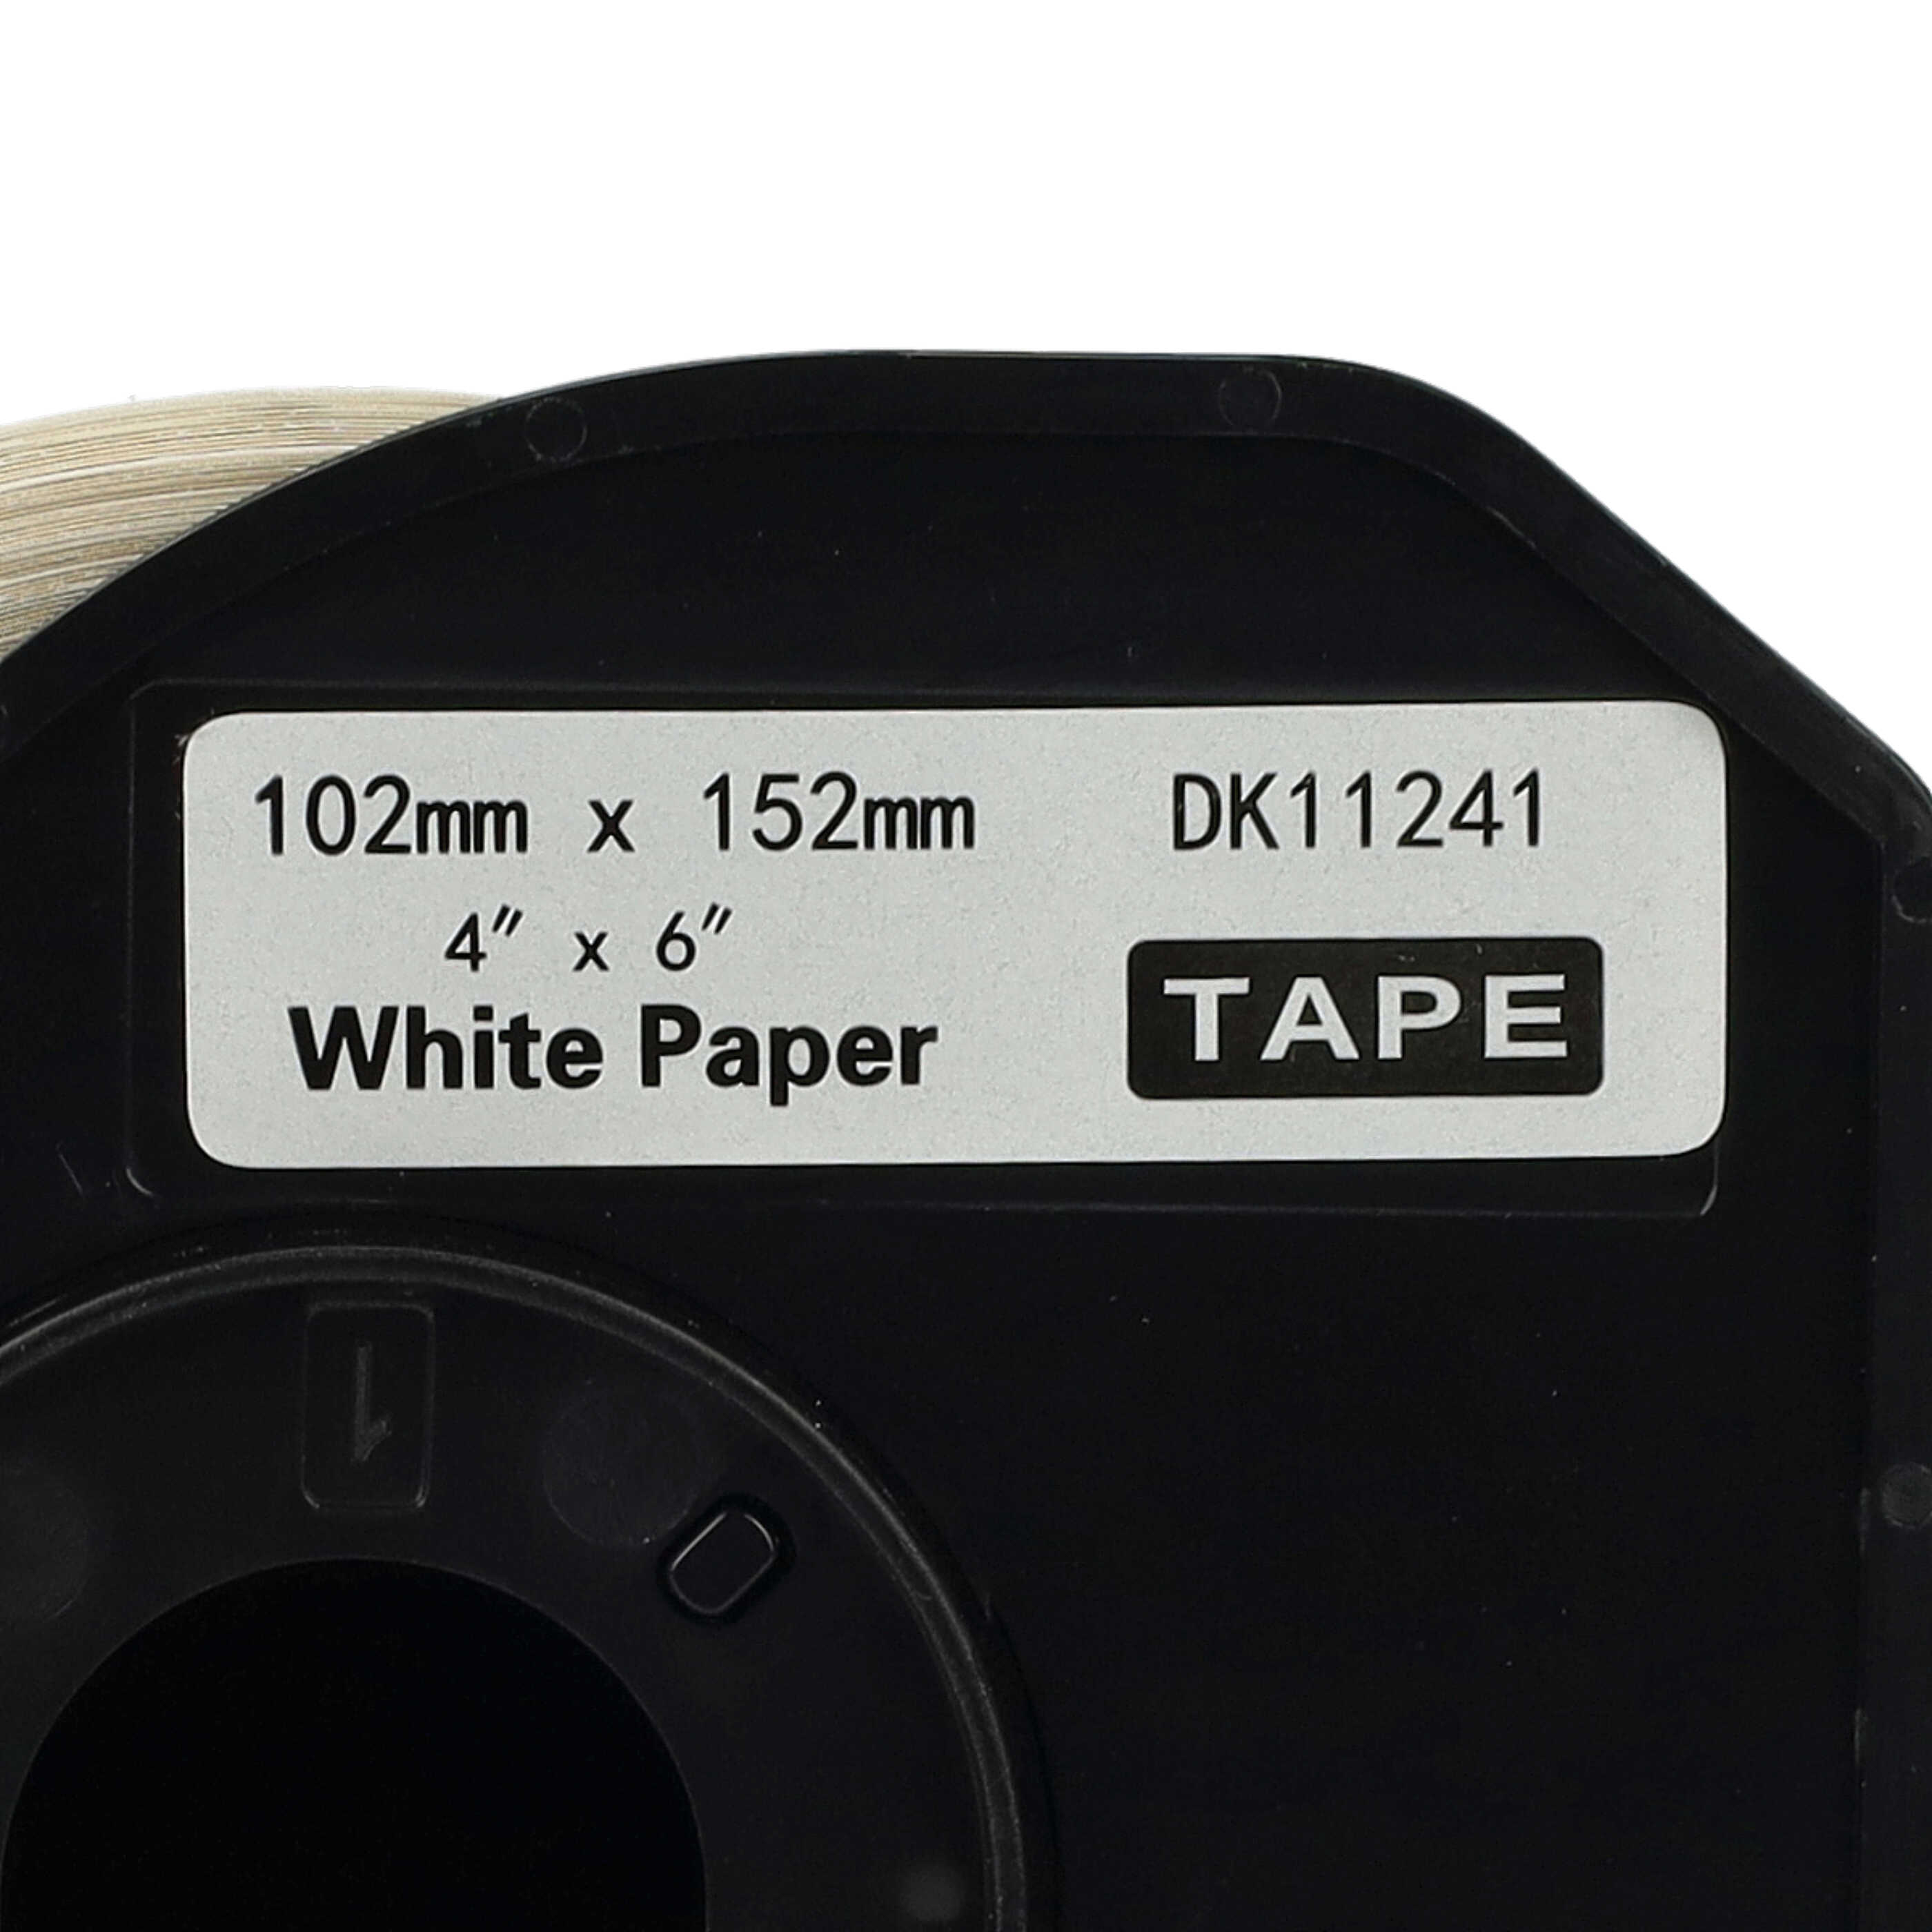 10x Etiketten als Ersatz für Brother DK-11241 für Etikettendrucker - Standard 102mm x 152mm + Halter